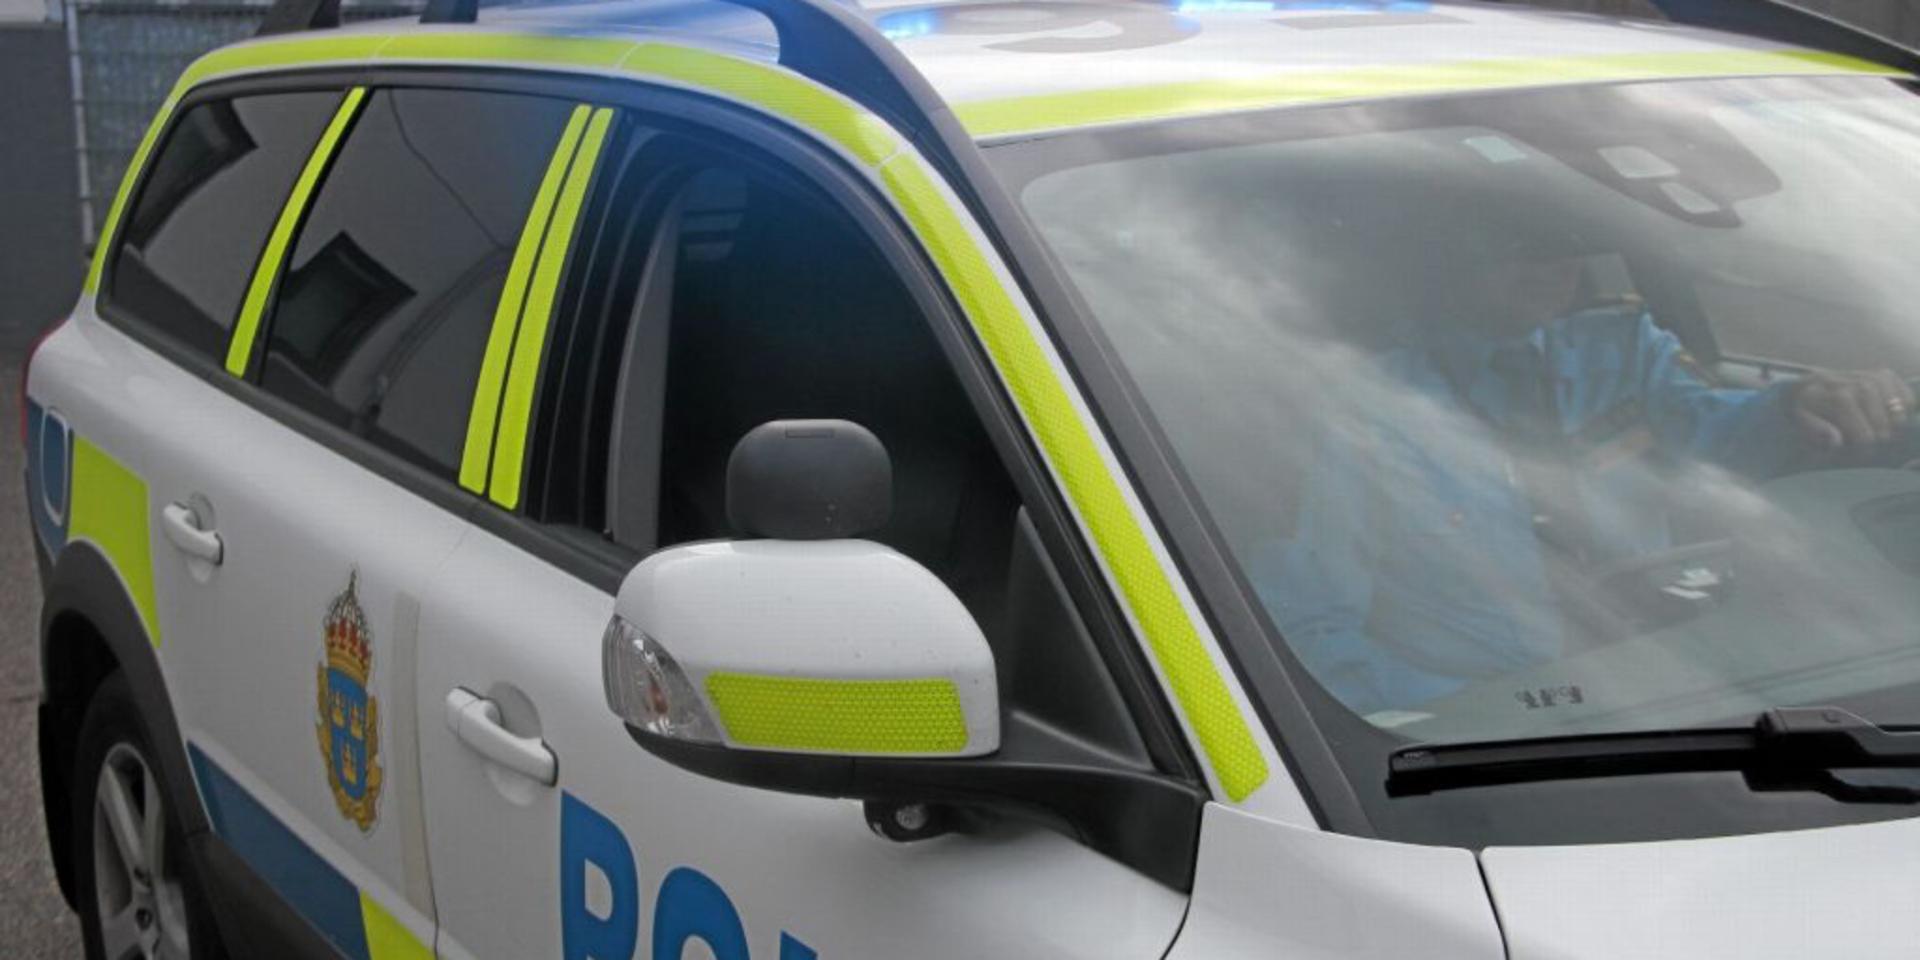 En busschaufför blev misshandlad av en bilist. Polis mötte upp vid på bussbolagets uppställningsplats i Kungälv.
Arkivbild